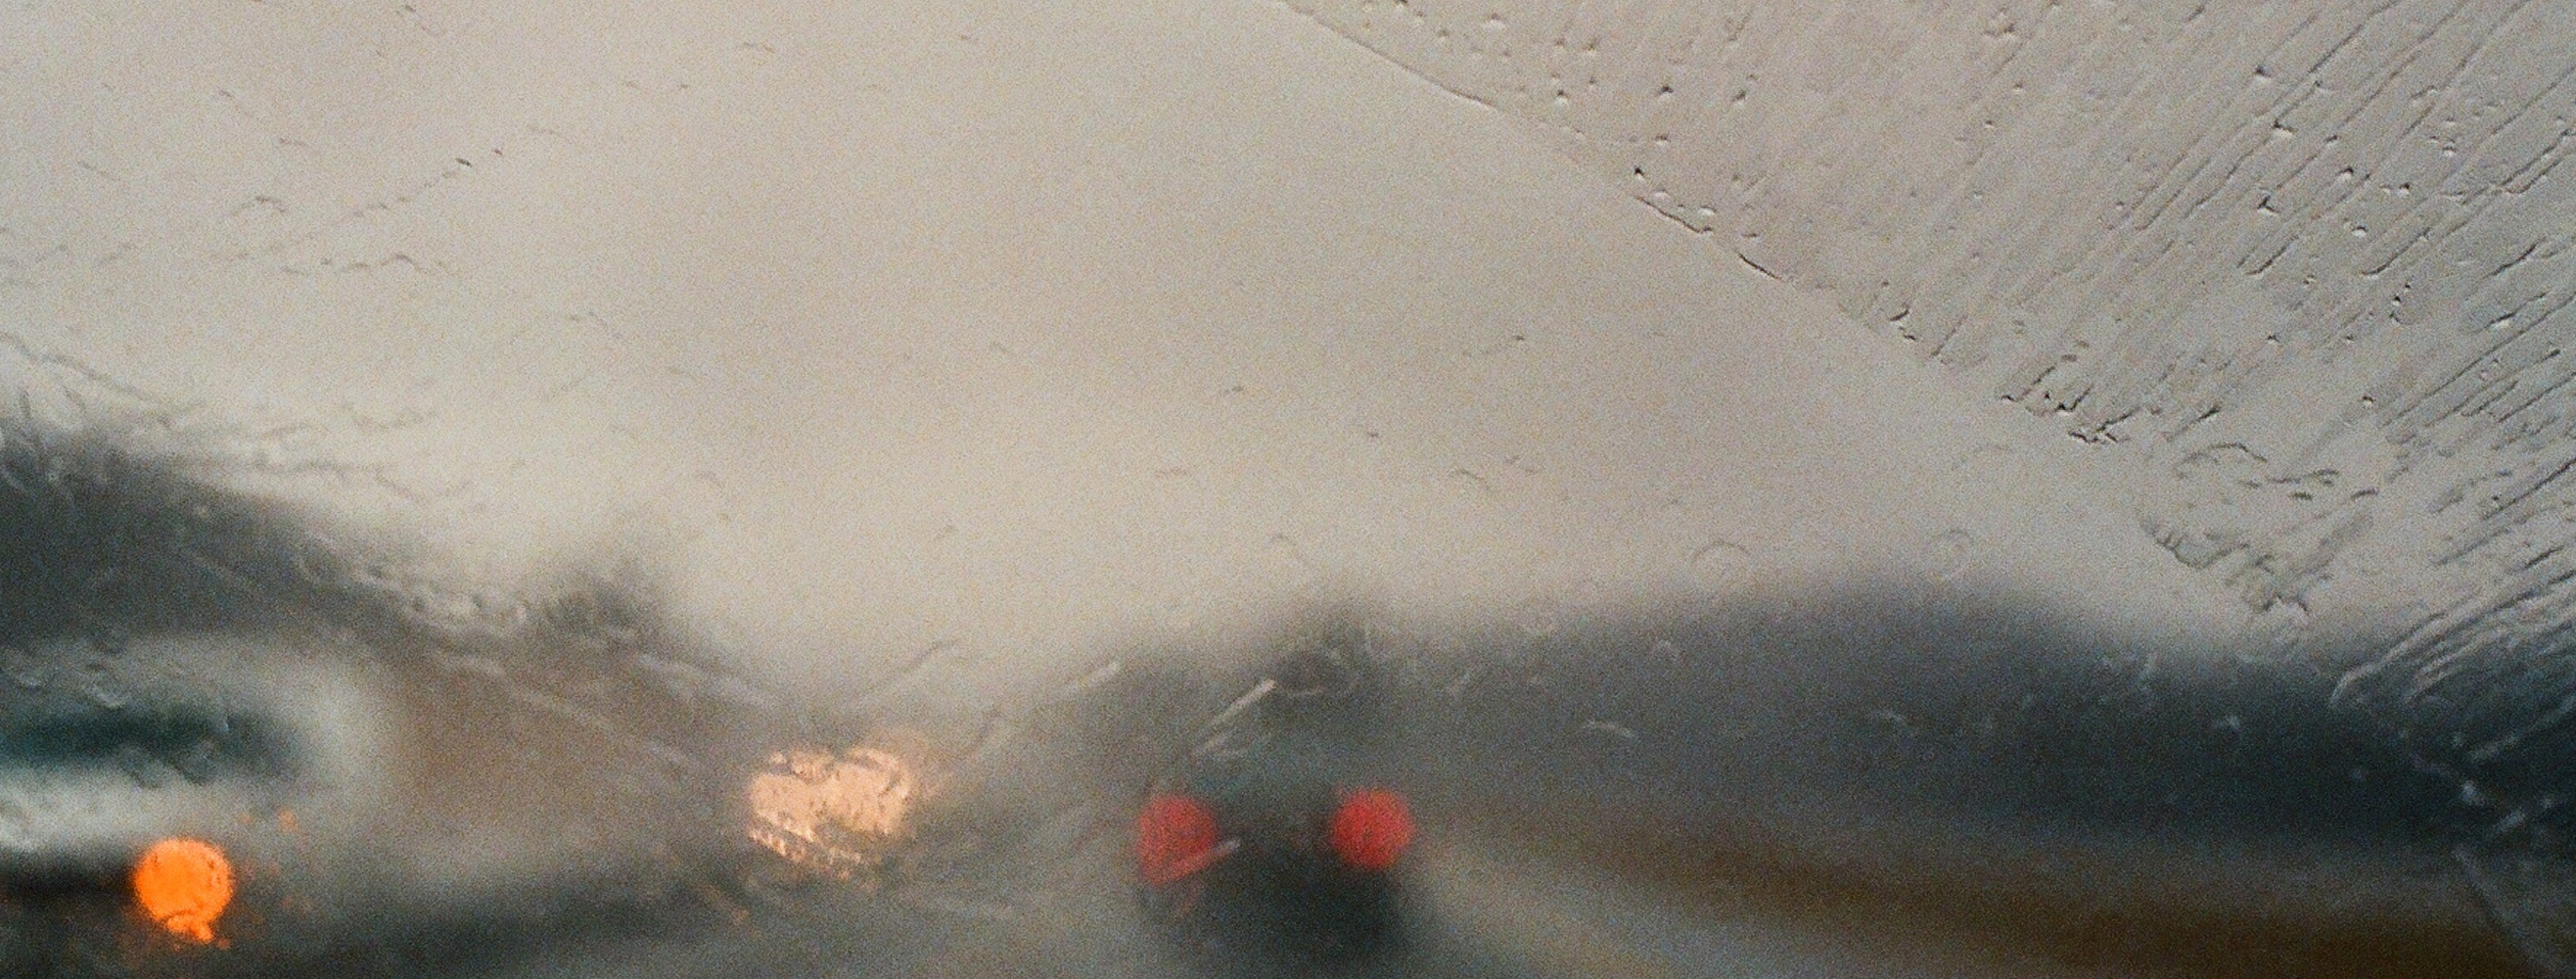 Niepoprawnie wystarta szyba podczas deszczu przez wycieraczki samochodowe.